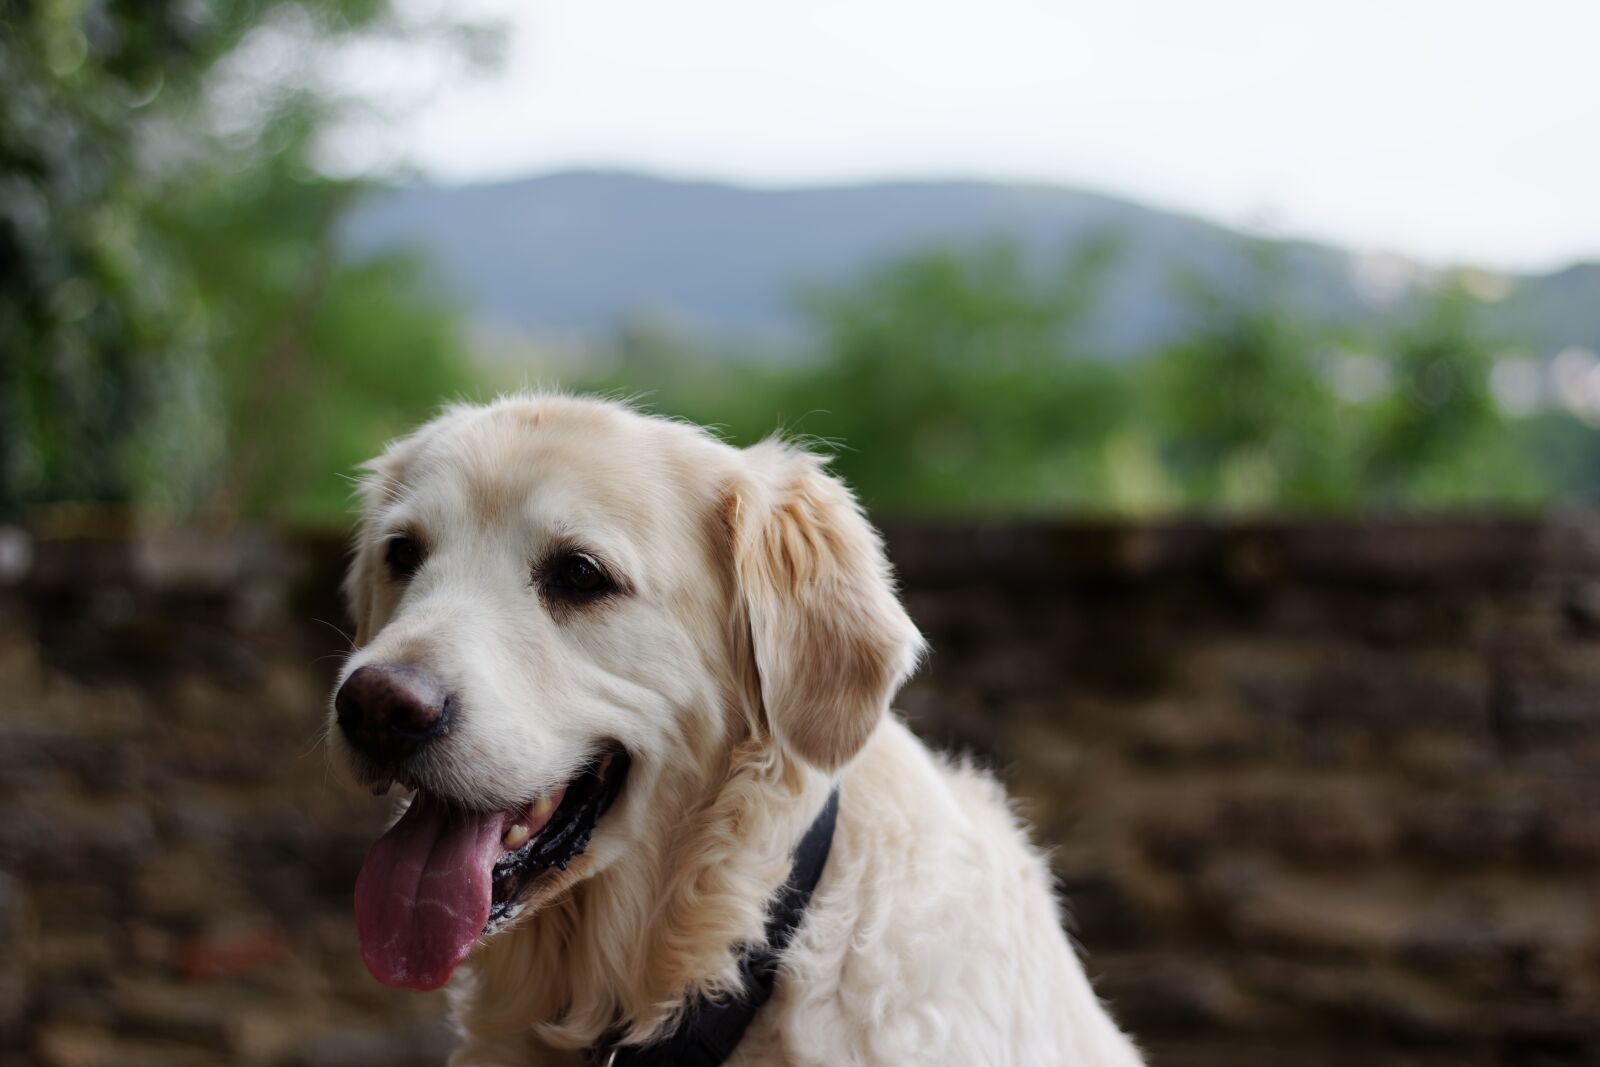 Canon EOS 60D sample photo. Dog, golden retriever, pet photography